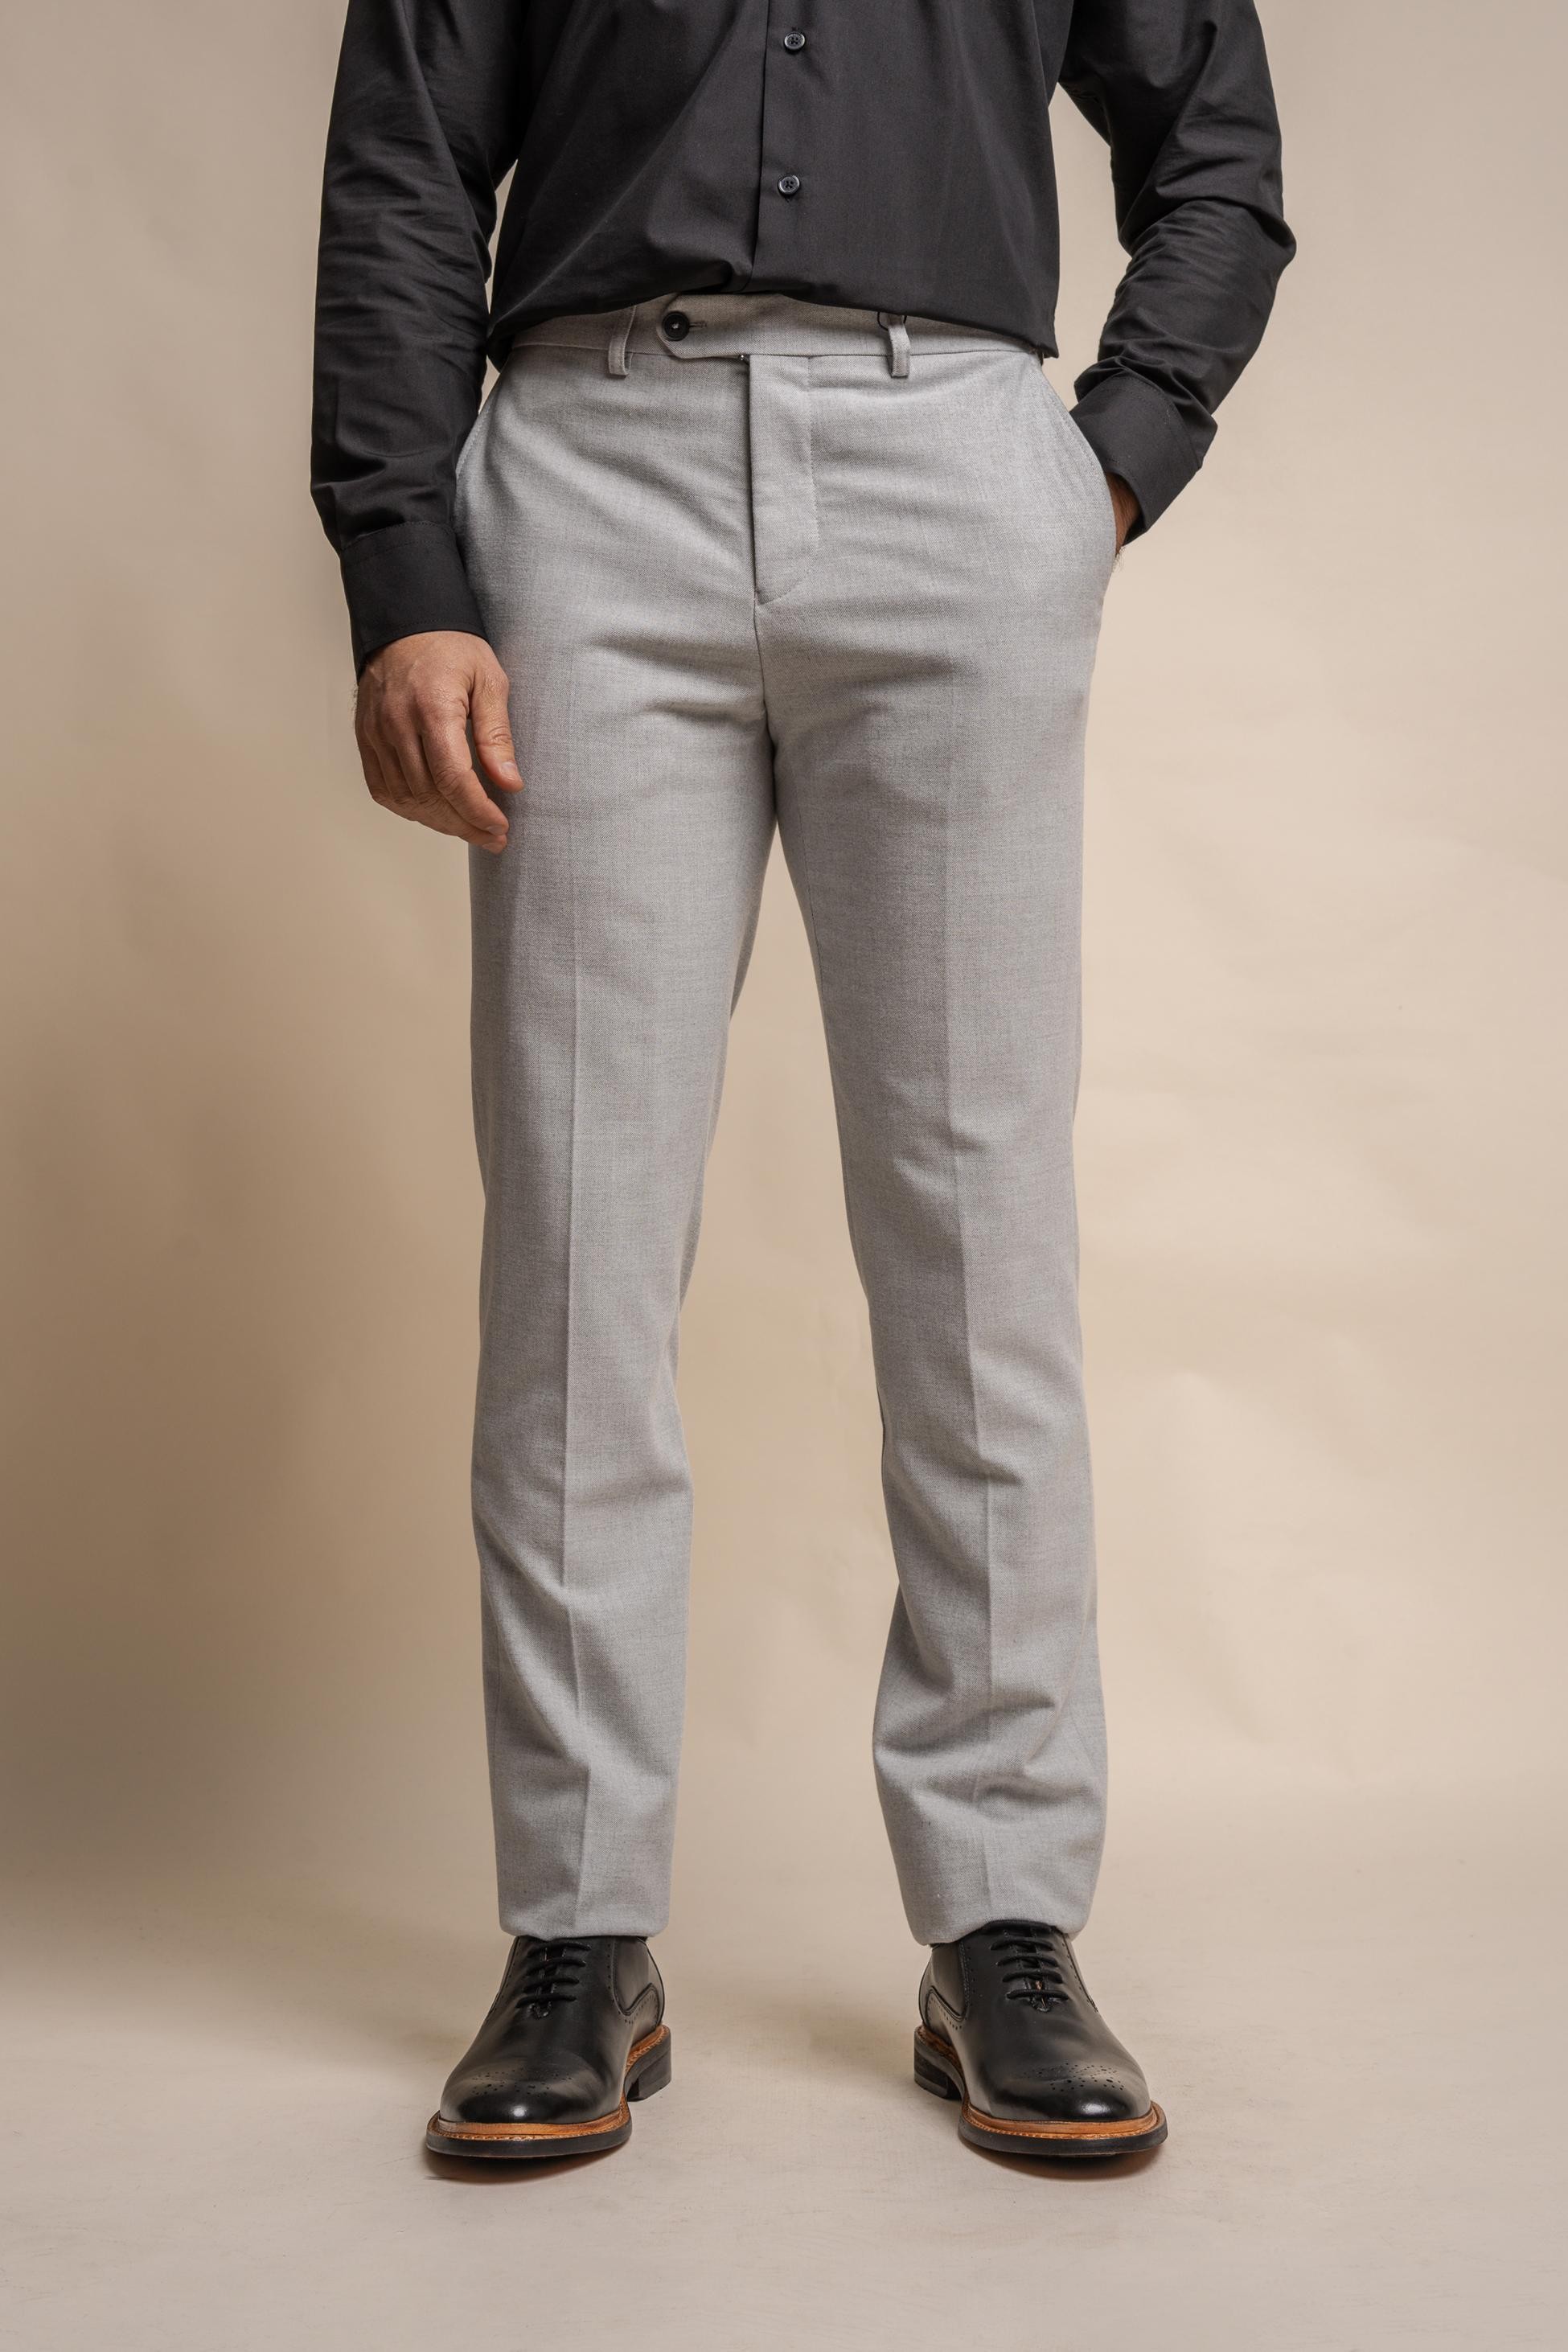 Men's Tweed Slim Fit Formal Pants- FURIOUS Ivory